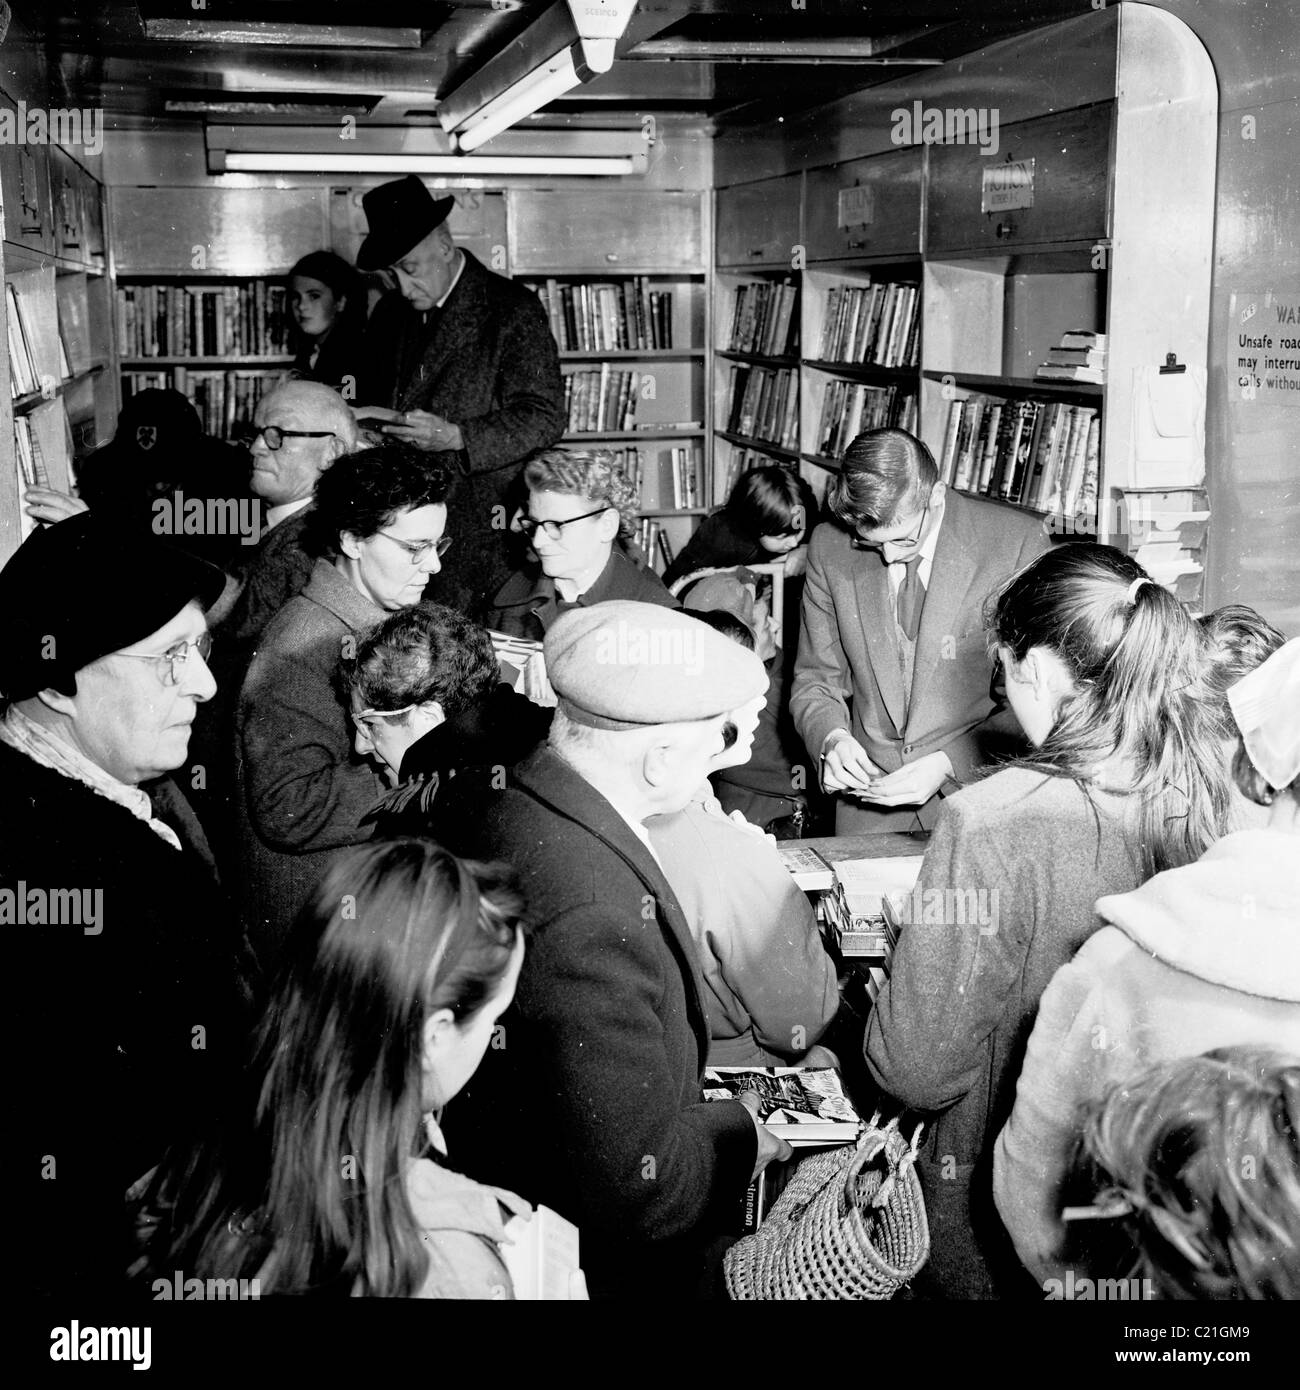 England der 1950er Jahre.  Menschen drängen sich in eine mobile Bibliothek van in Battersea, London, in diesem historischen Bild von J Allan Cash. Stockfoto